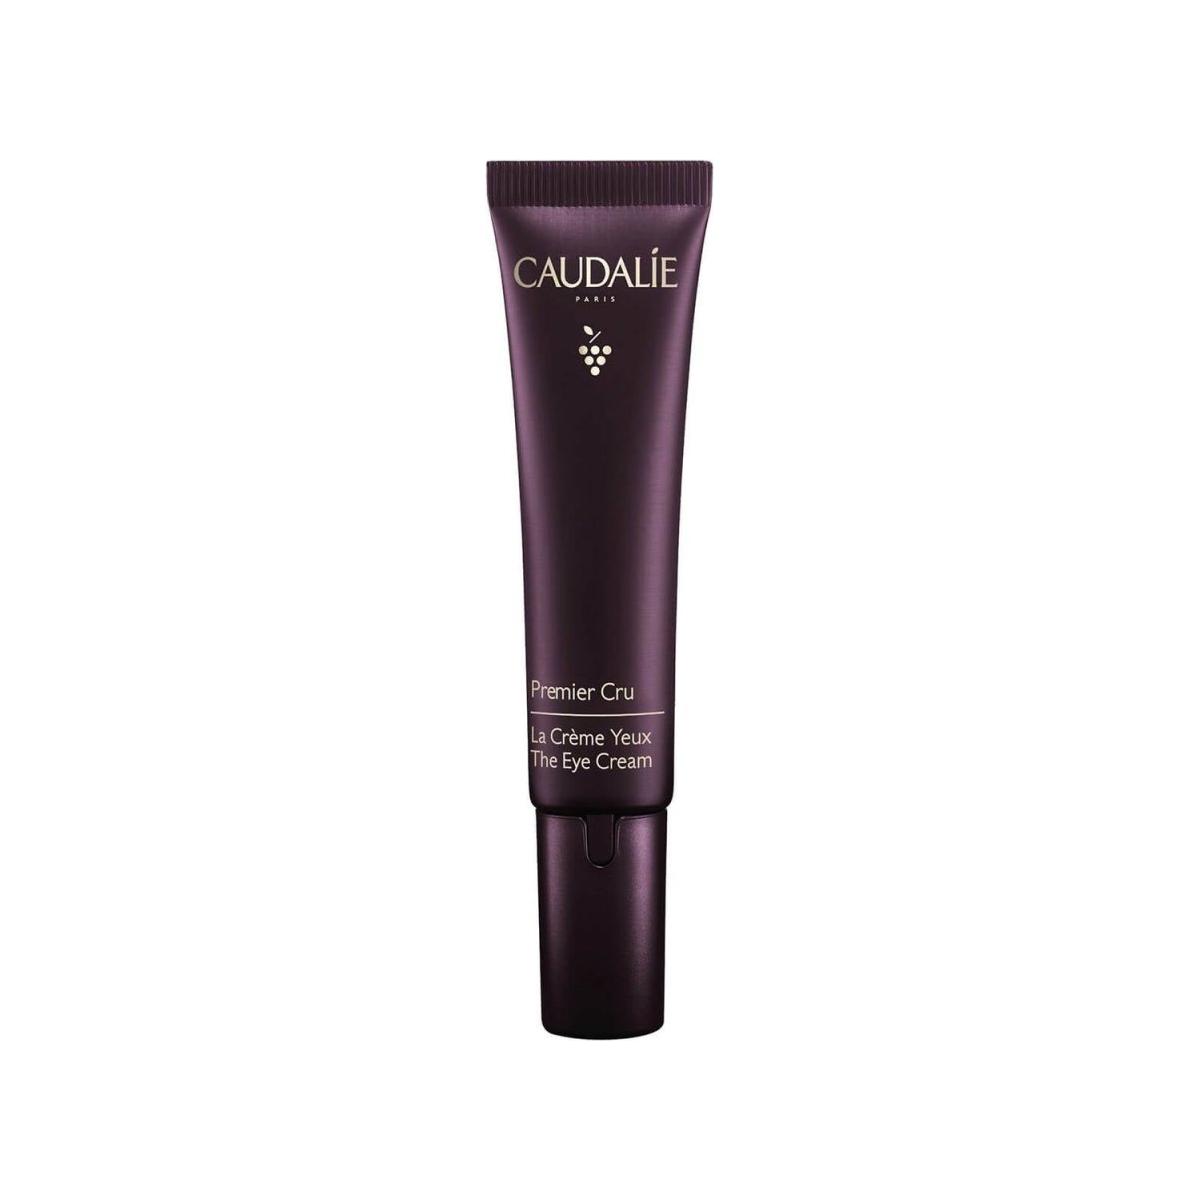 Caudalie Premier Cru The Eye Cream - 15ml - Glam Global UK